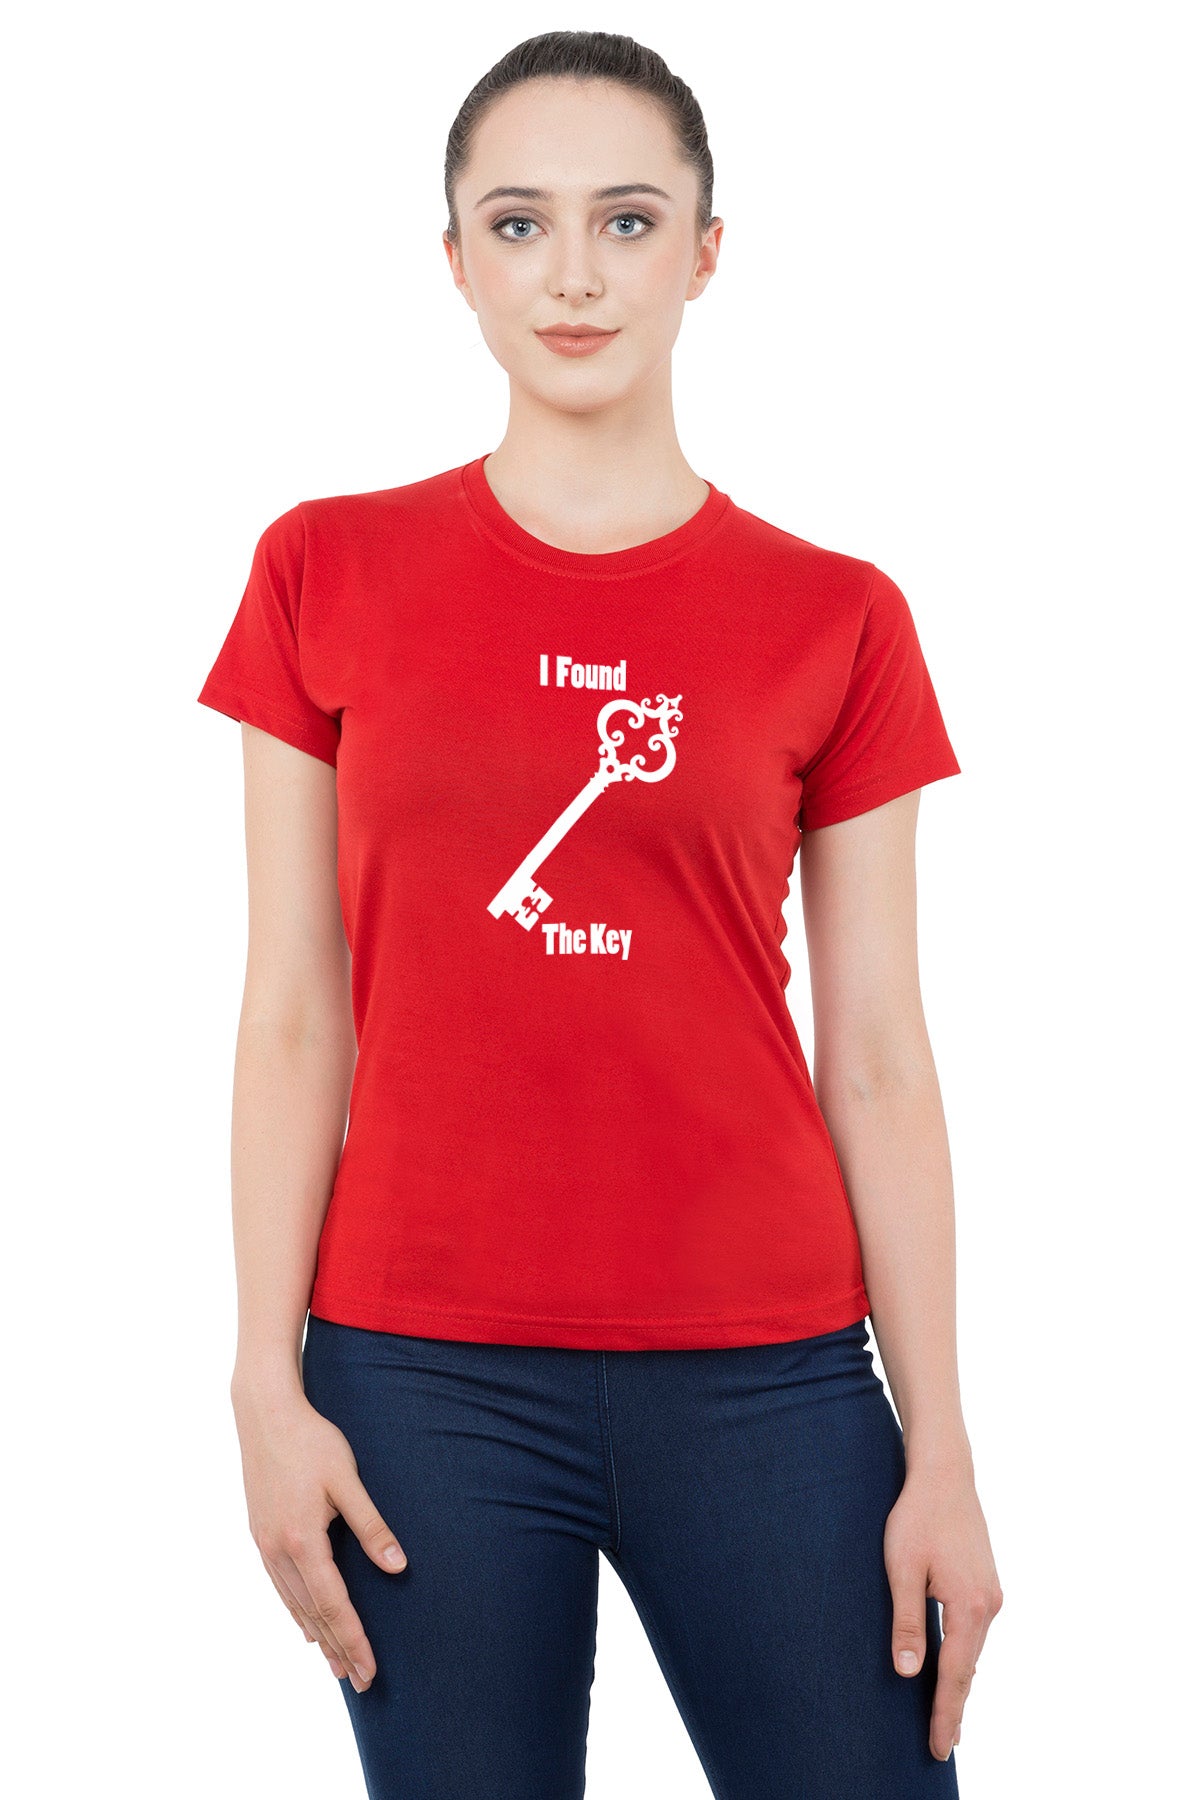 Lock Key matching Couple T shirts- Red